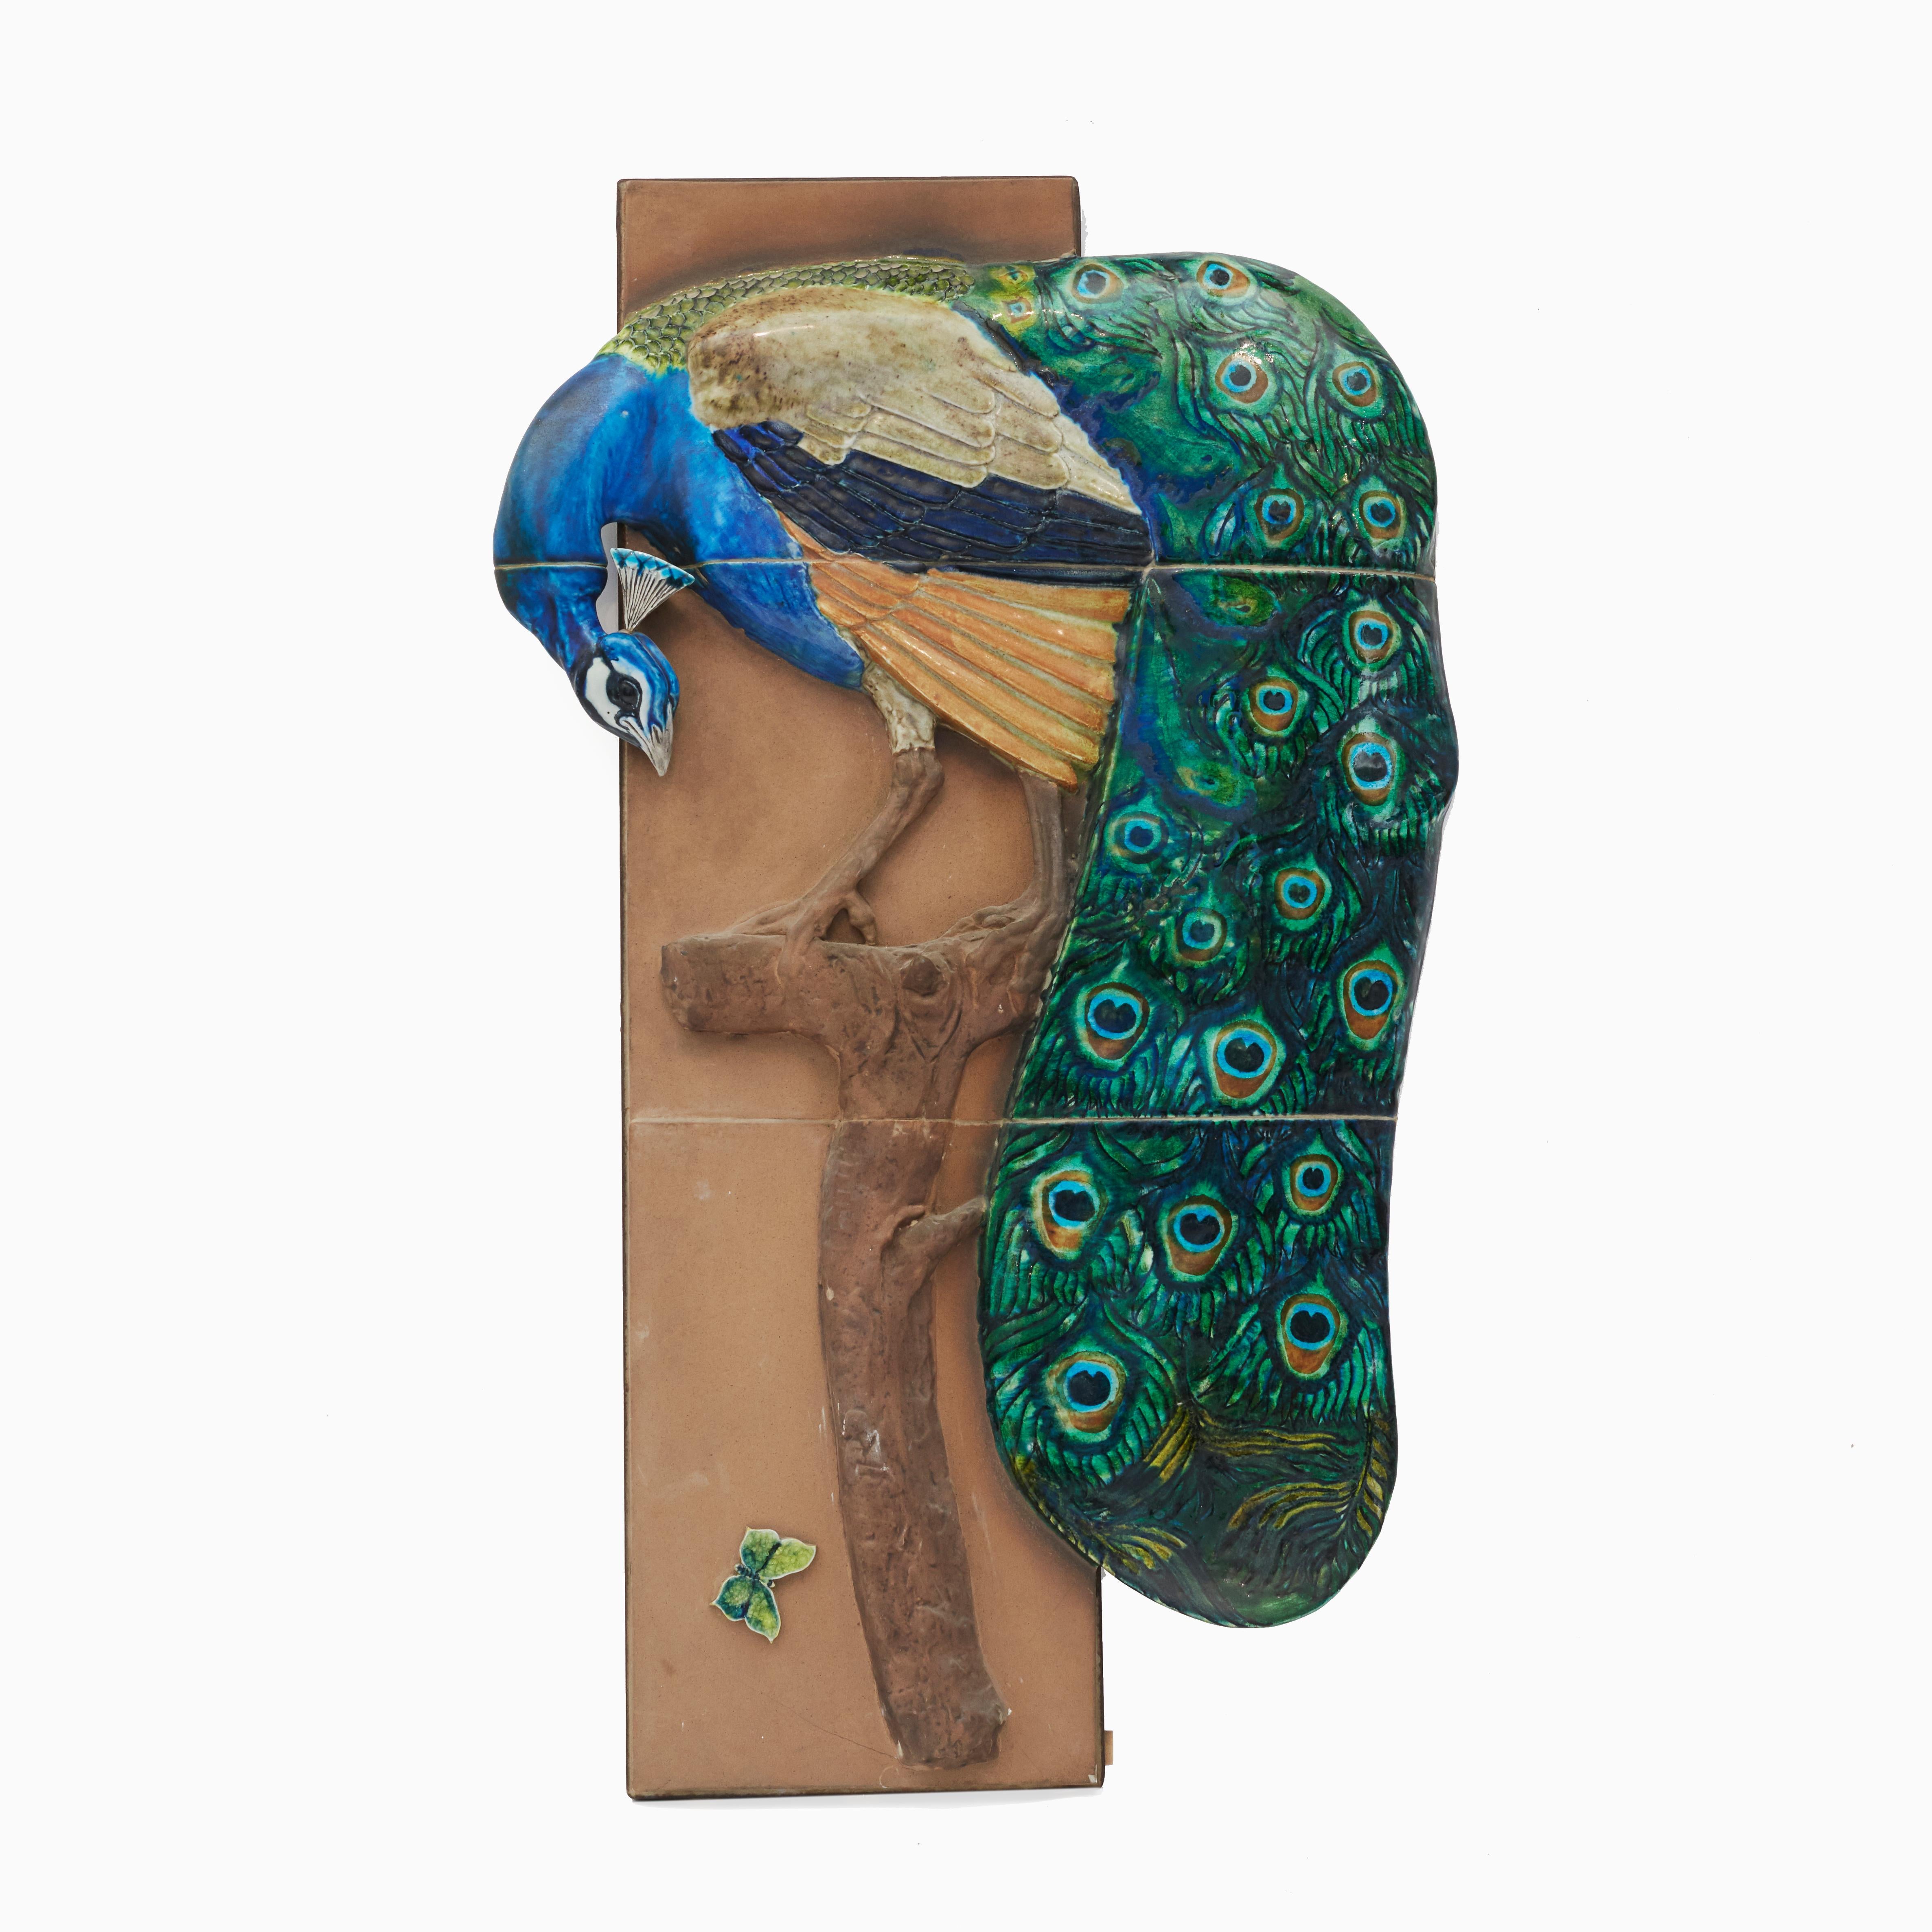 Jeanne Grut (Dänin, 1927-2009)
Ein Fayence-Wandrelief in Form eines Pfaus mit Schmetterling.
Sehr dekorativ und extrem selten.
Polychrom glasierte Fayence auf unglasiertem Grund.
Entworfen in den 1960er Jahren von Jeanne Grut für Aluminia, Dänemark.